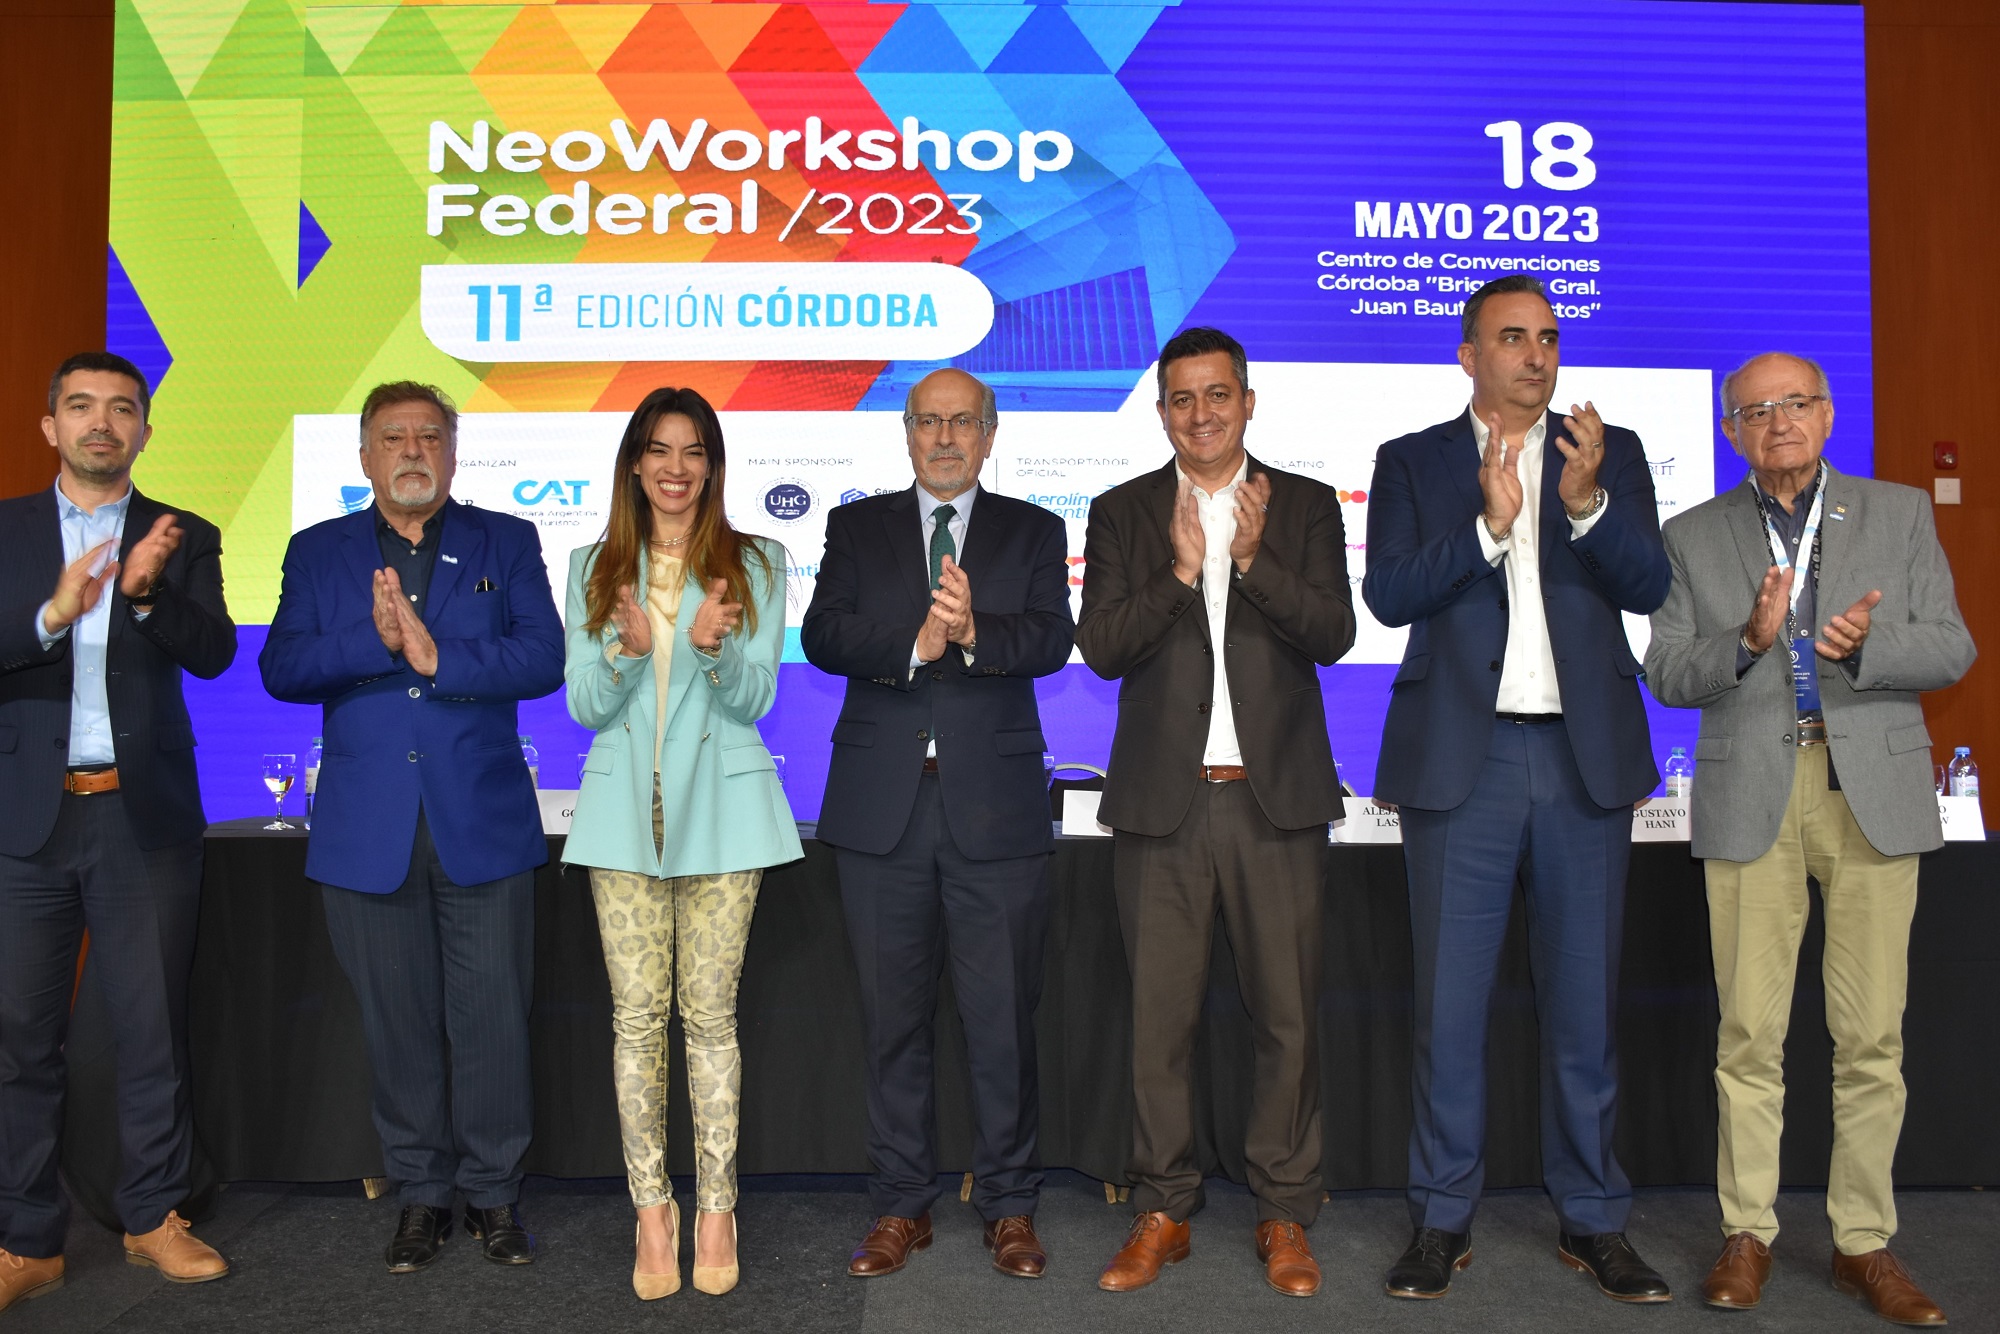 La provincia de Córdoba fue anfitriona y protagonista en la 11° edición del NeoWorkshop Federal